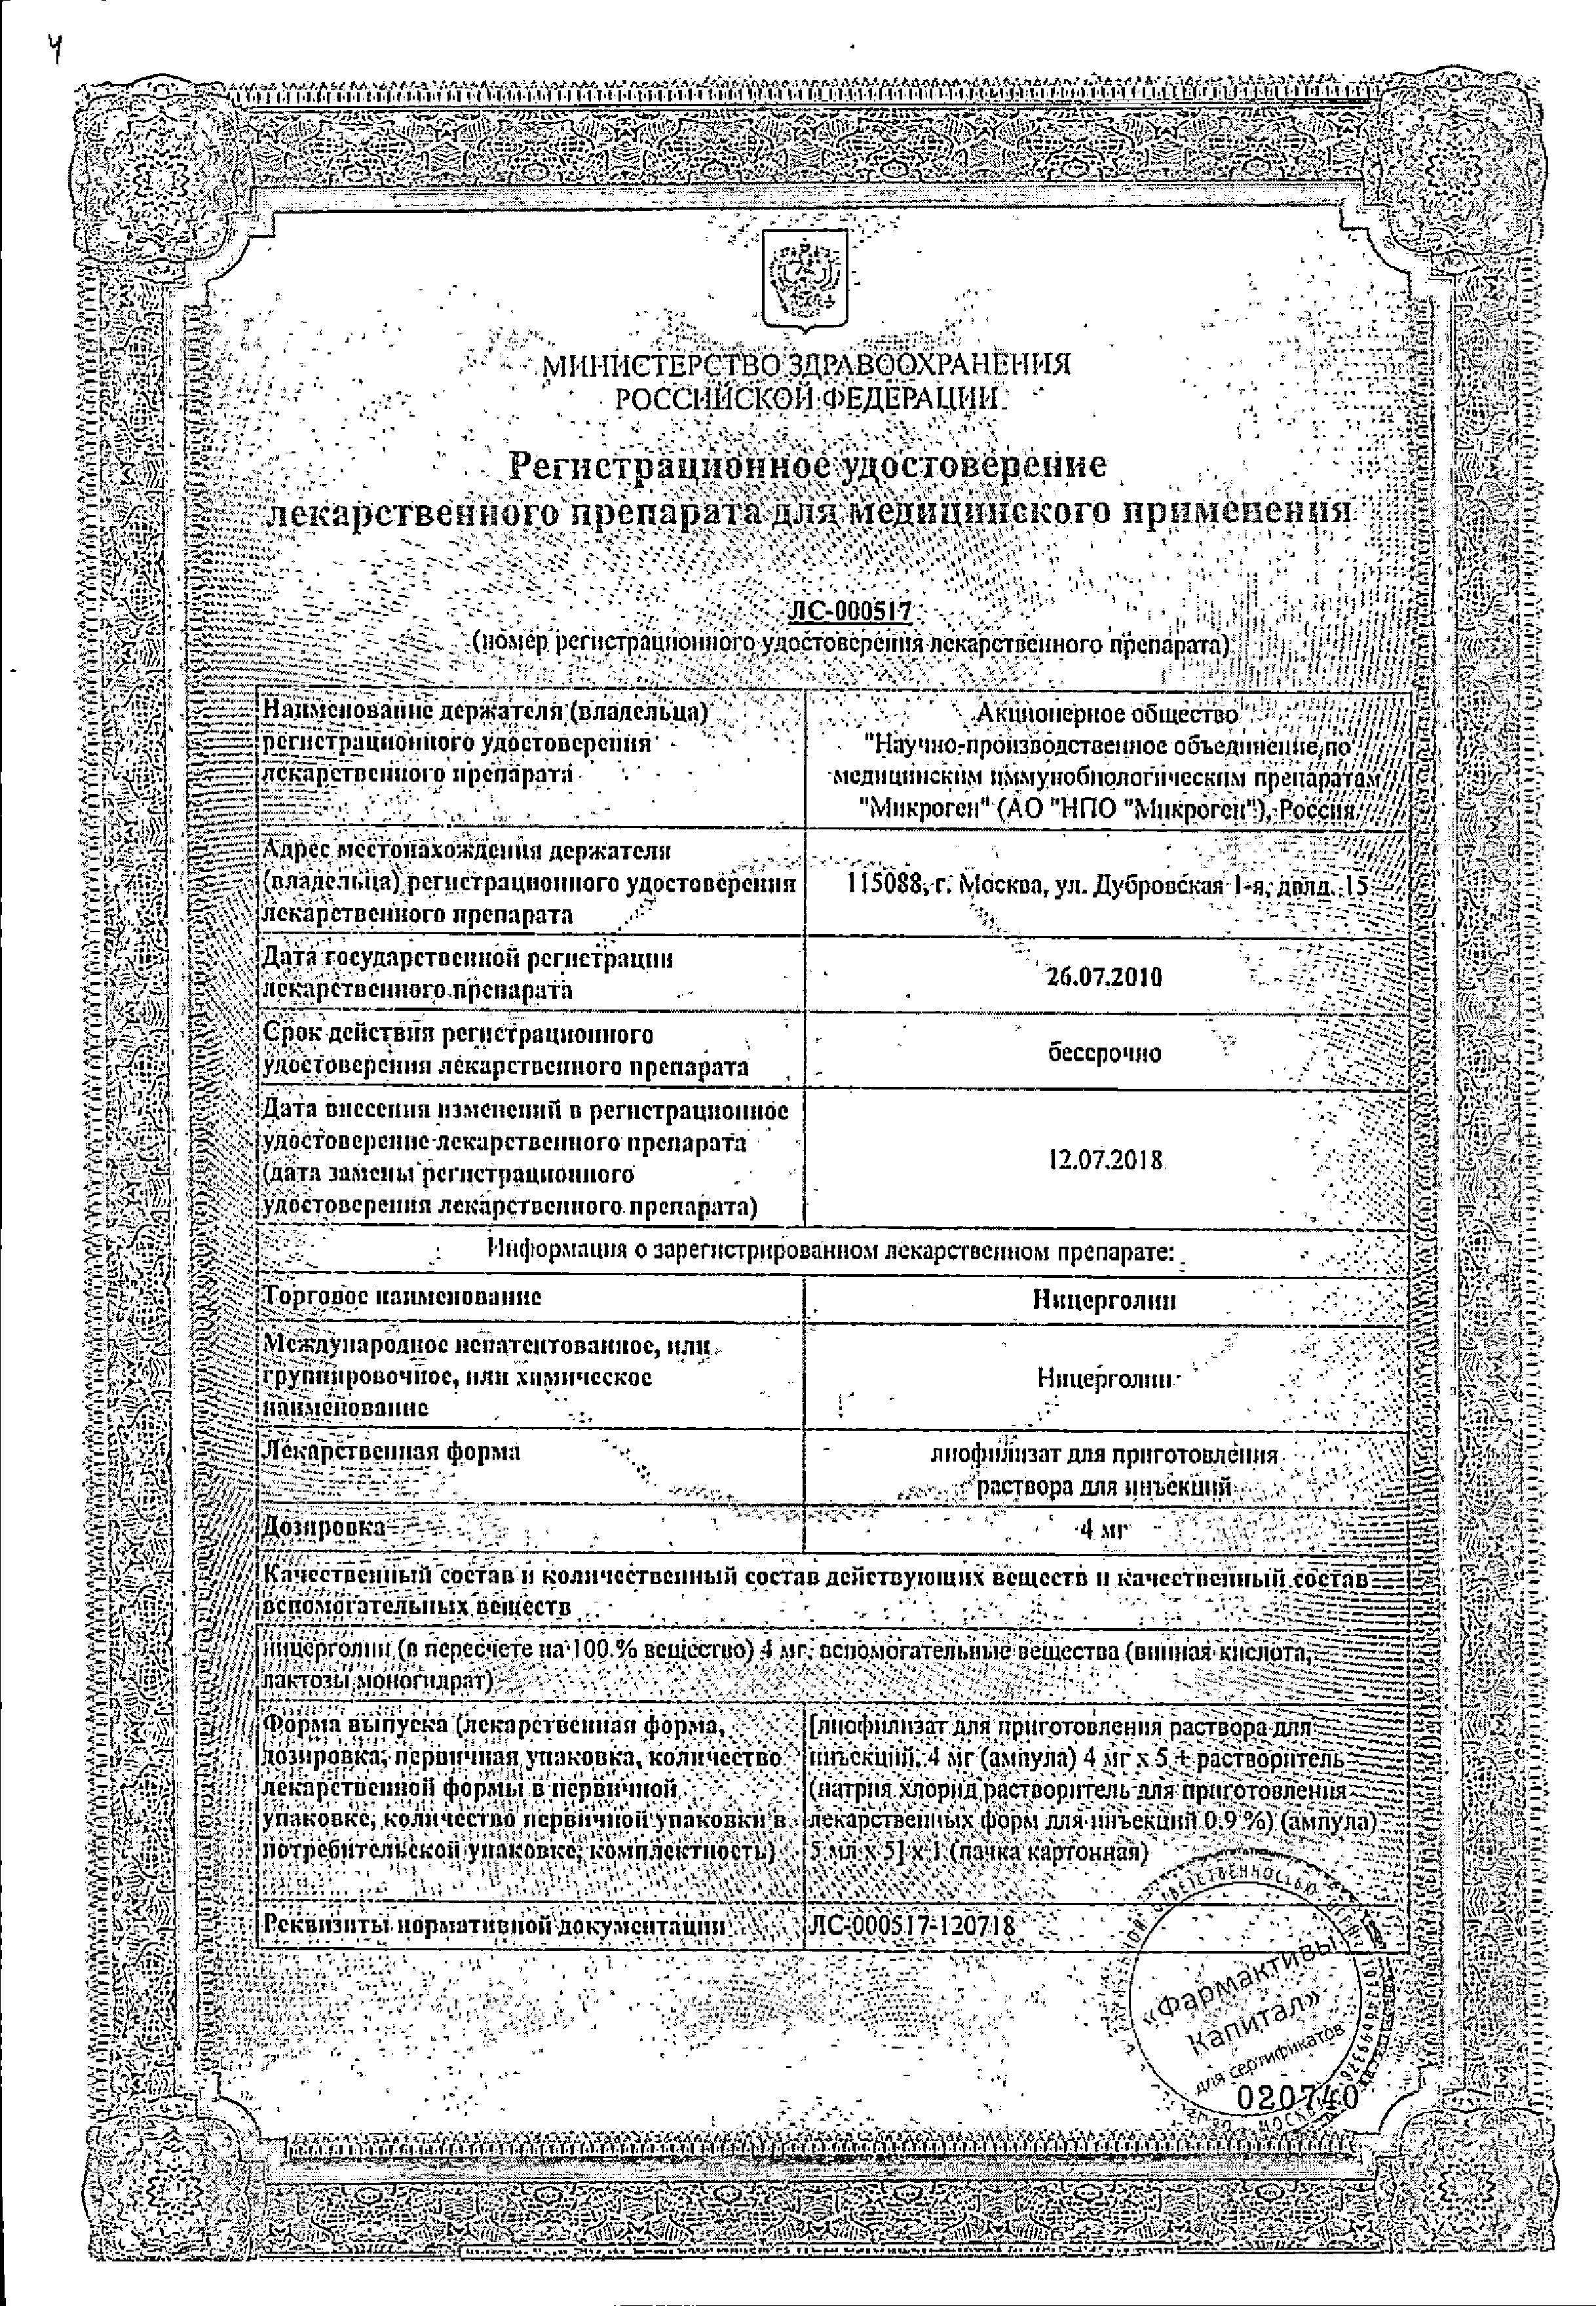 Ницерголин сертификат